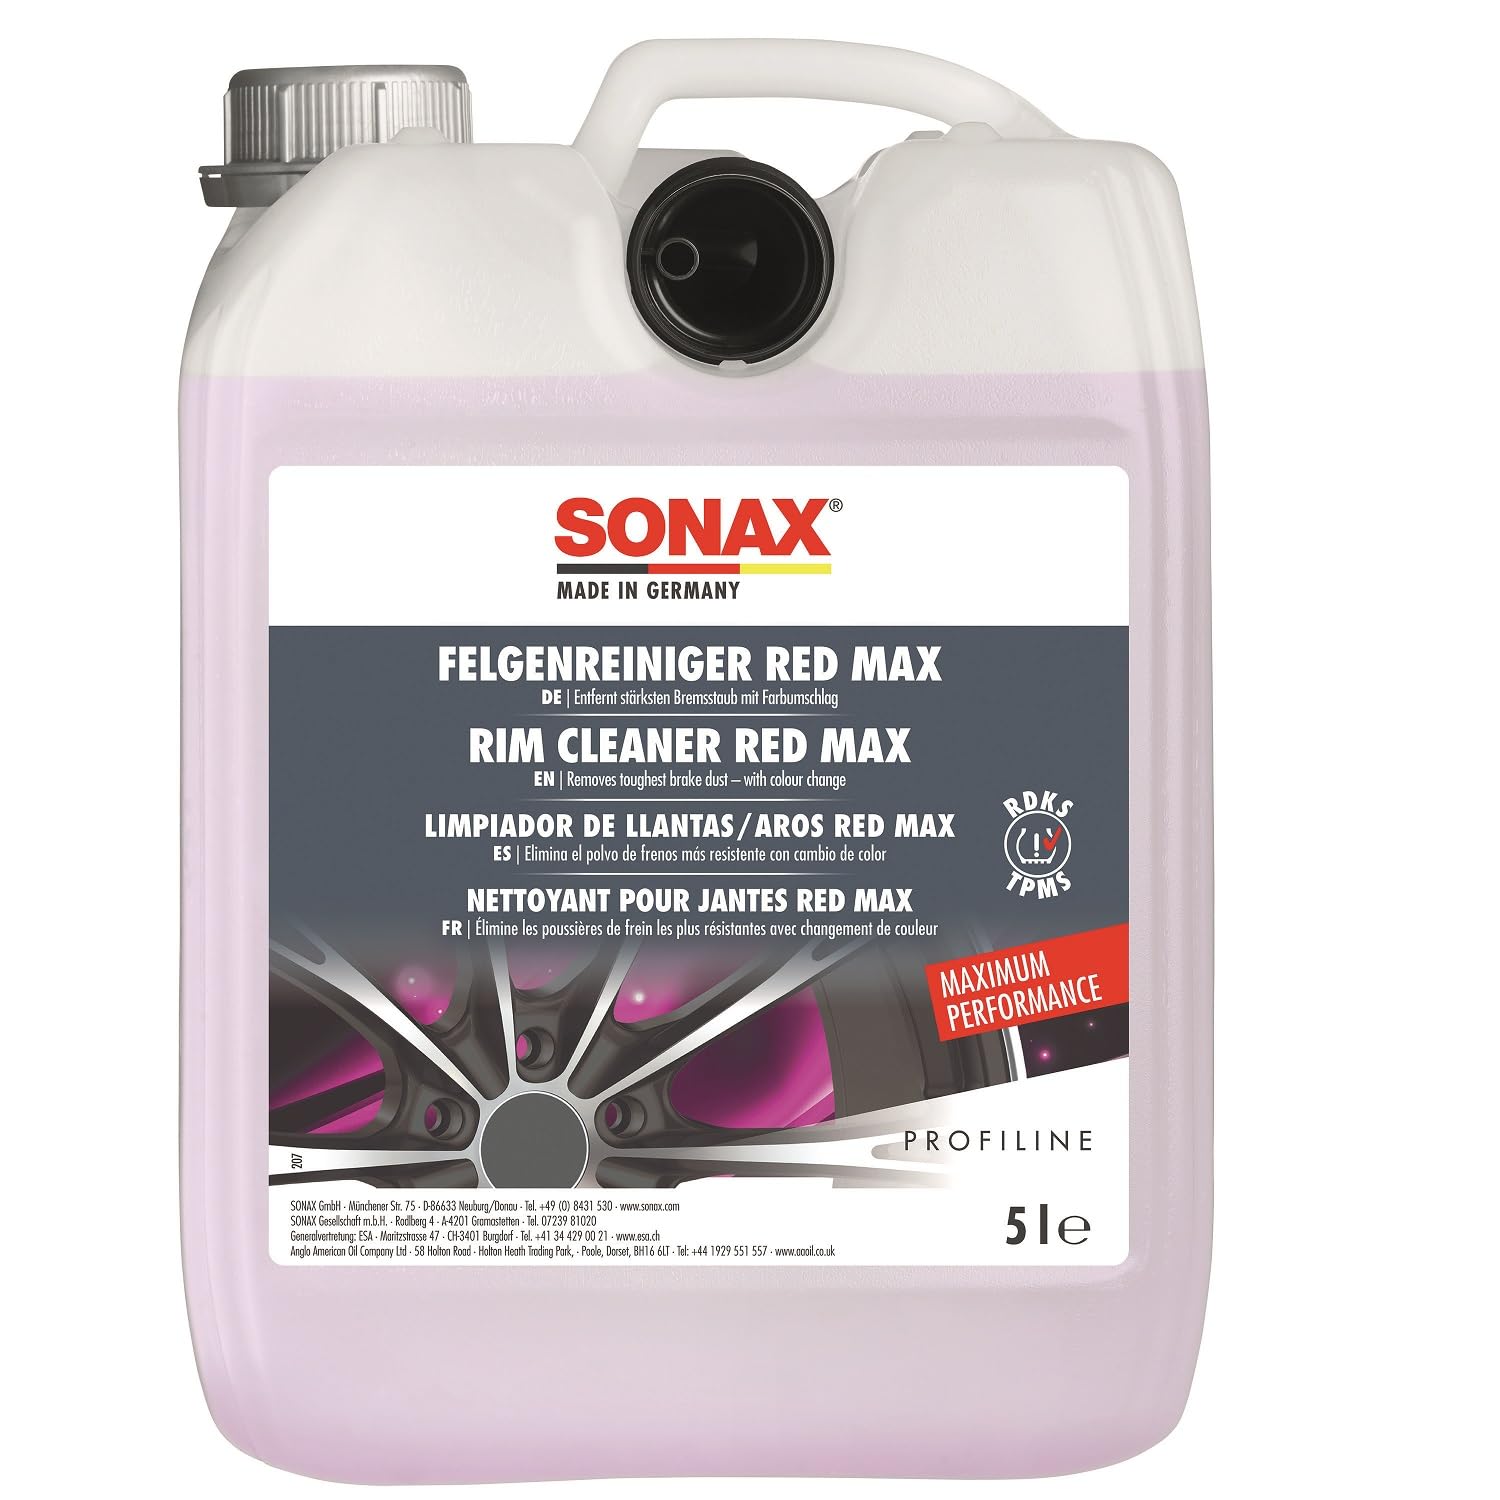 SONAX PROFILINE FelgenReiniger Red Max (5 Liter) entfernt stärksten Bremsstaub mit Farbumschlag | Art-Nr. 02315050 von SONAX